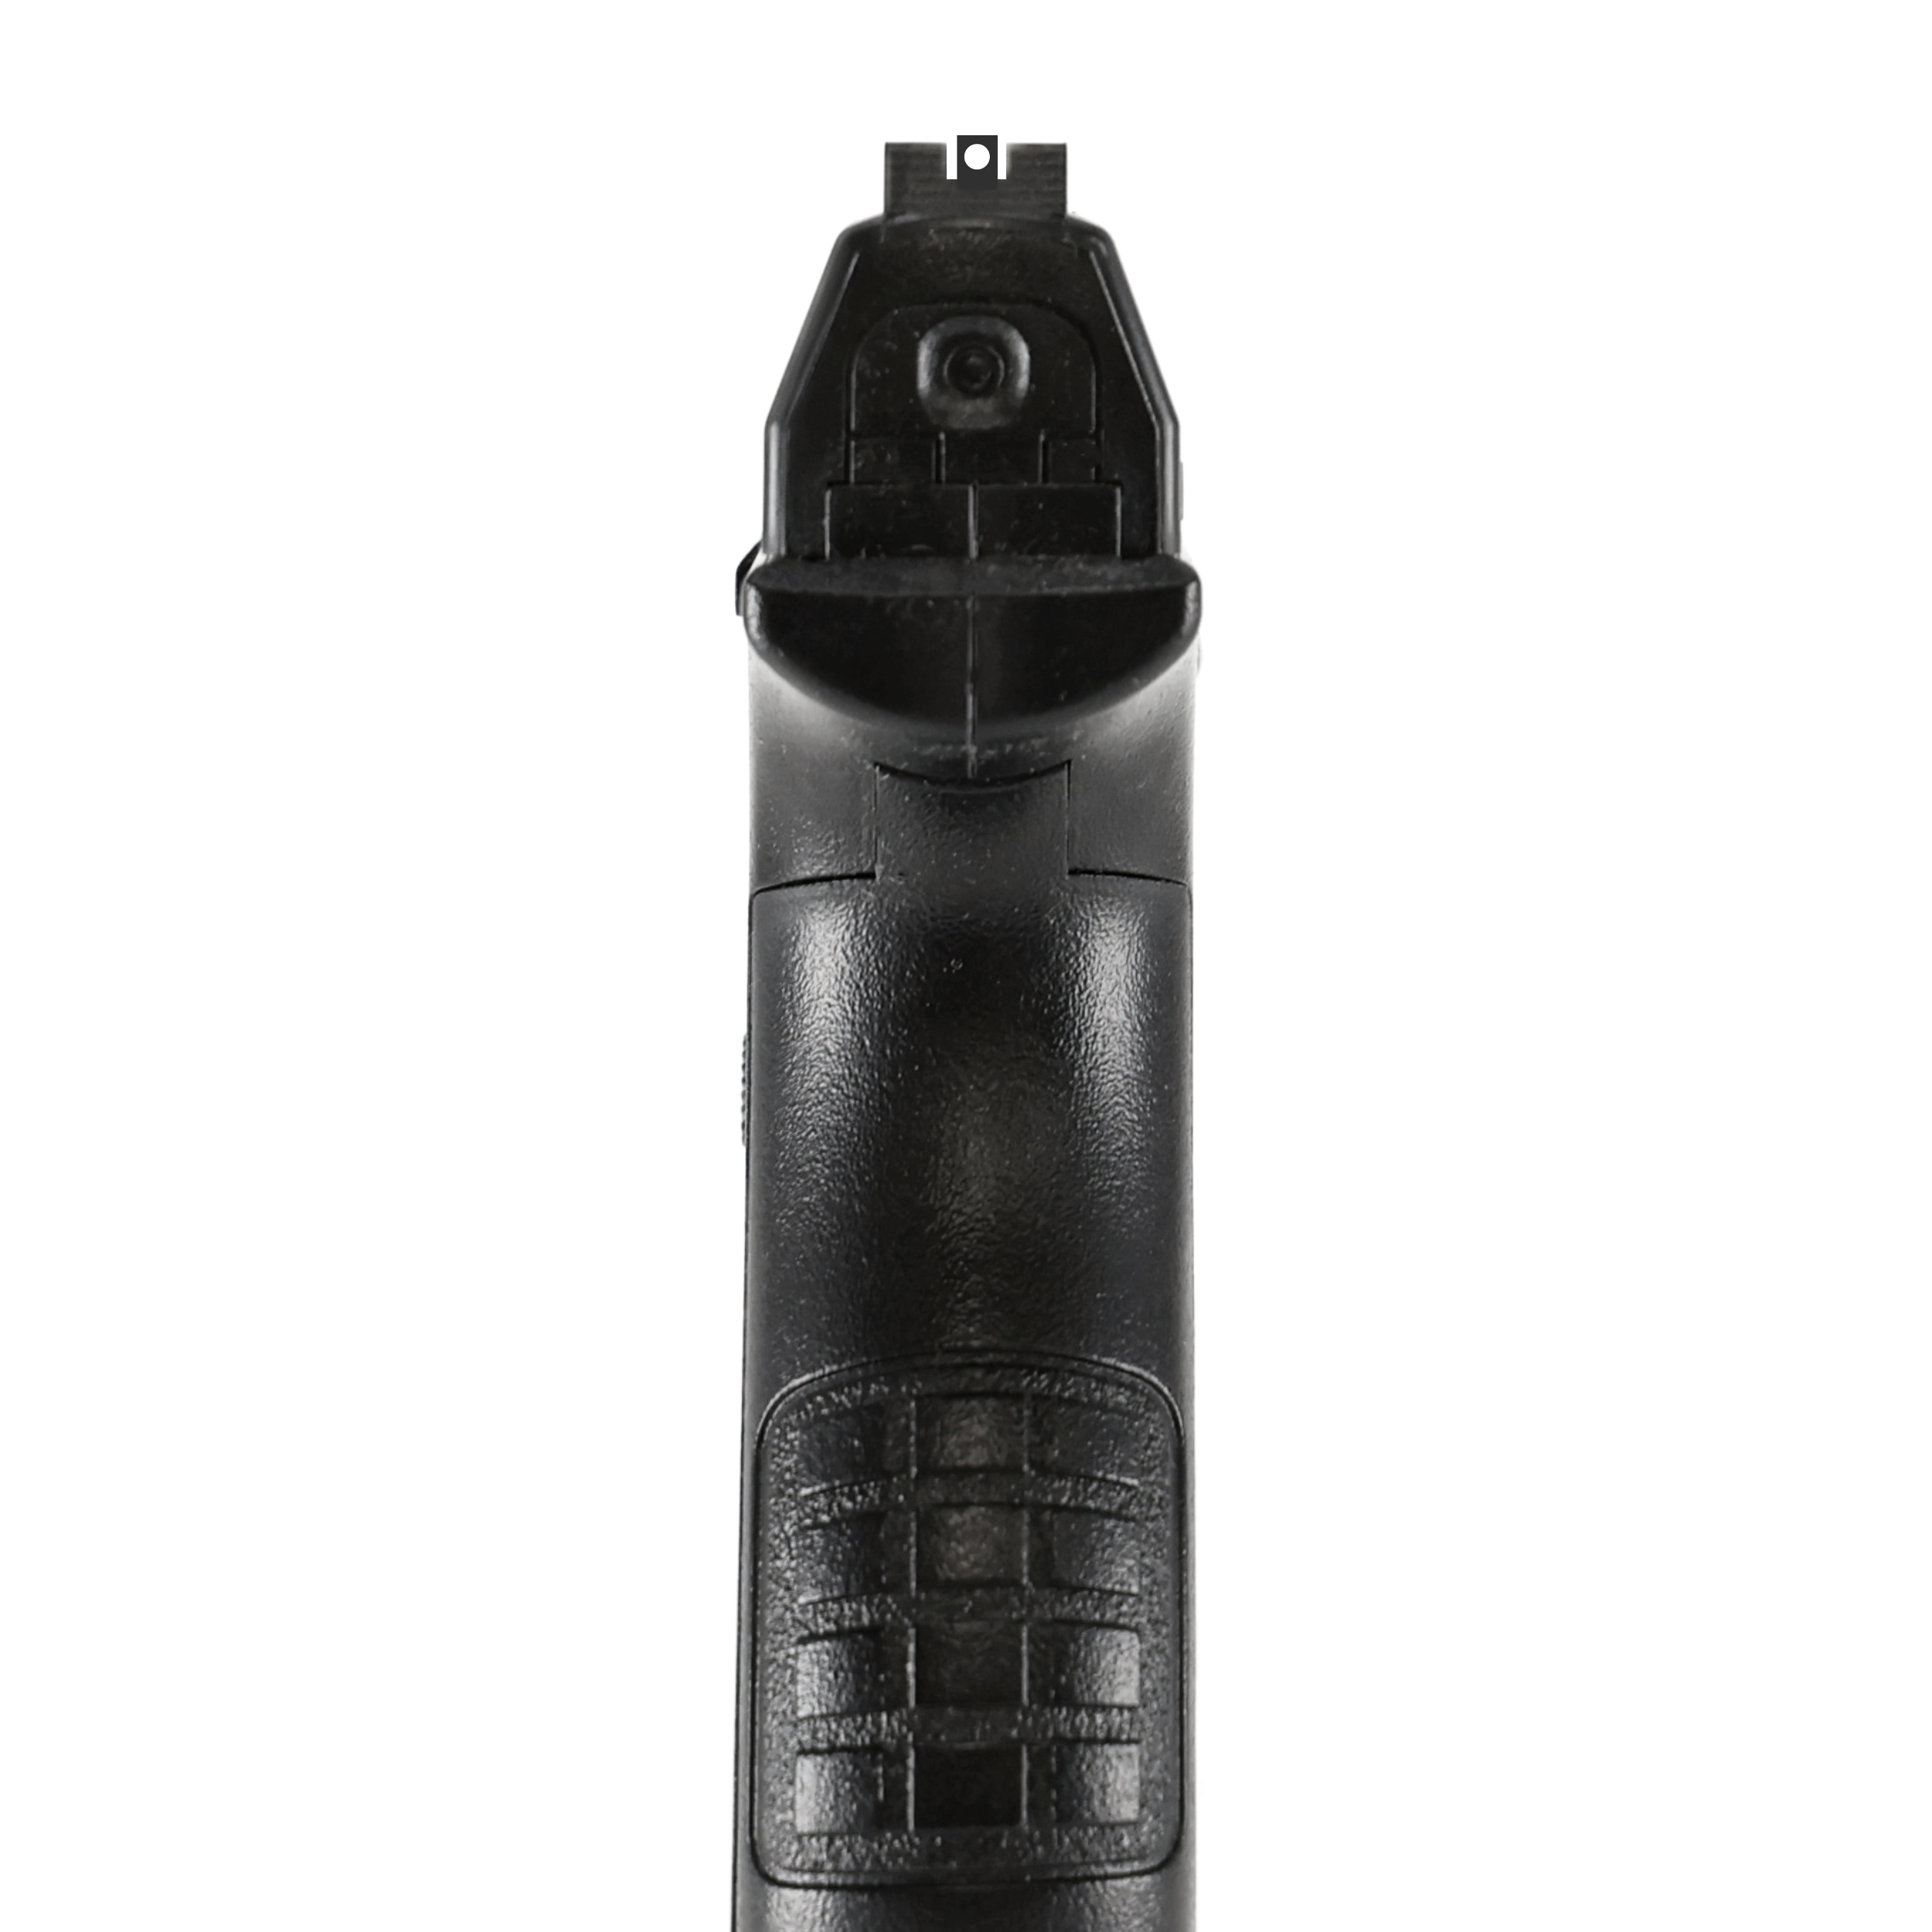 Kit Pistolet CO2 XBG Umarex, calibre 4.5 mm (3 joules) - SD-Equipements